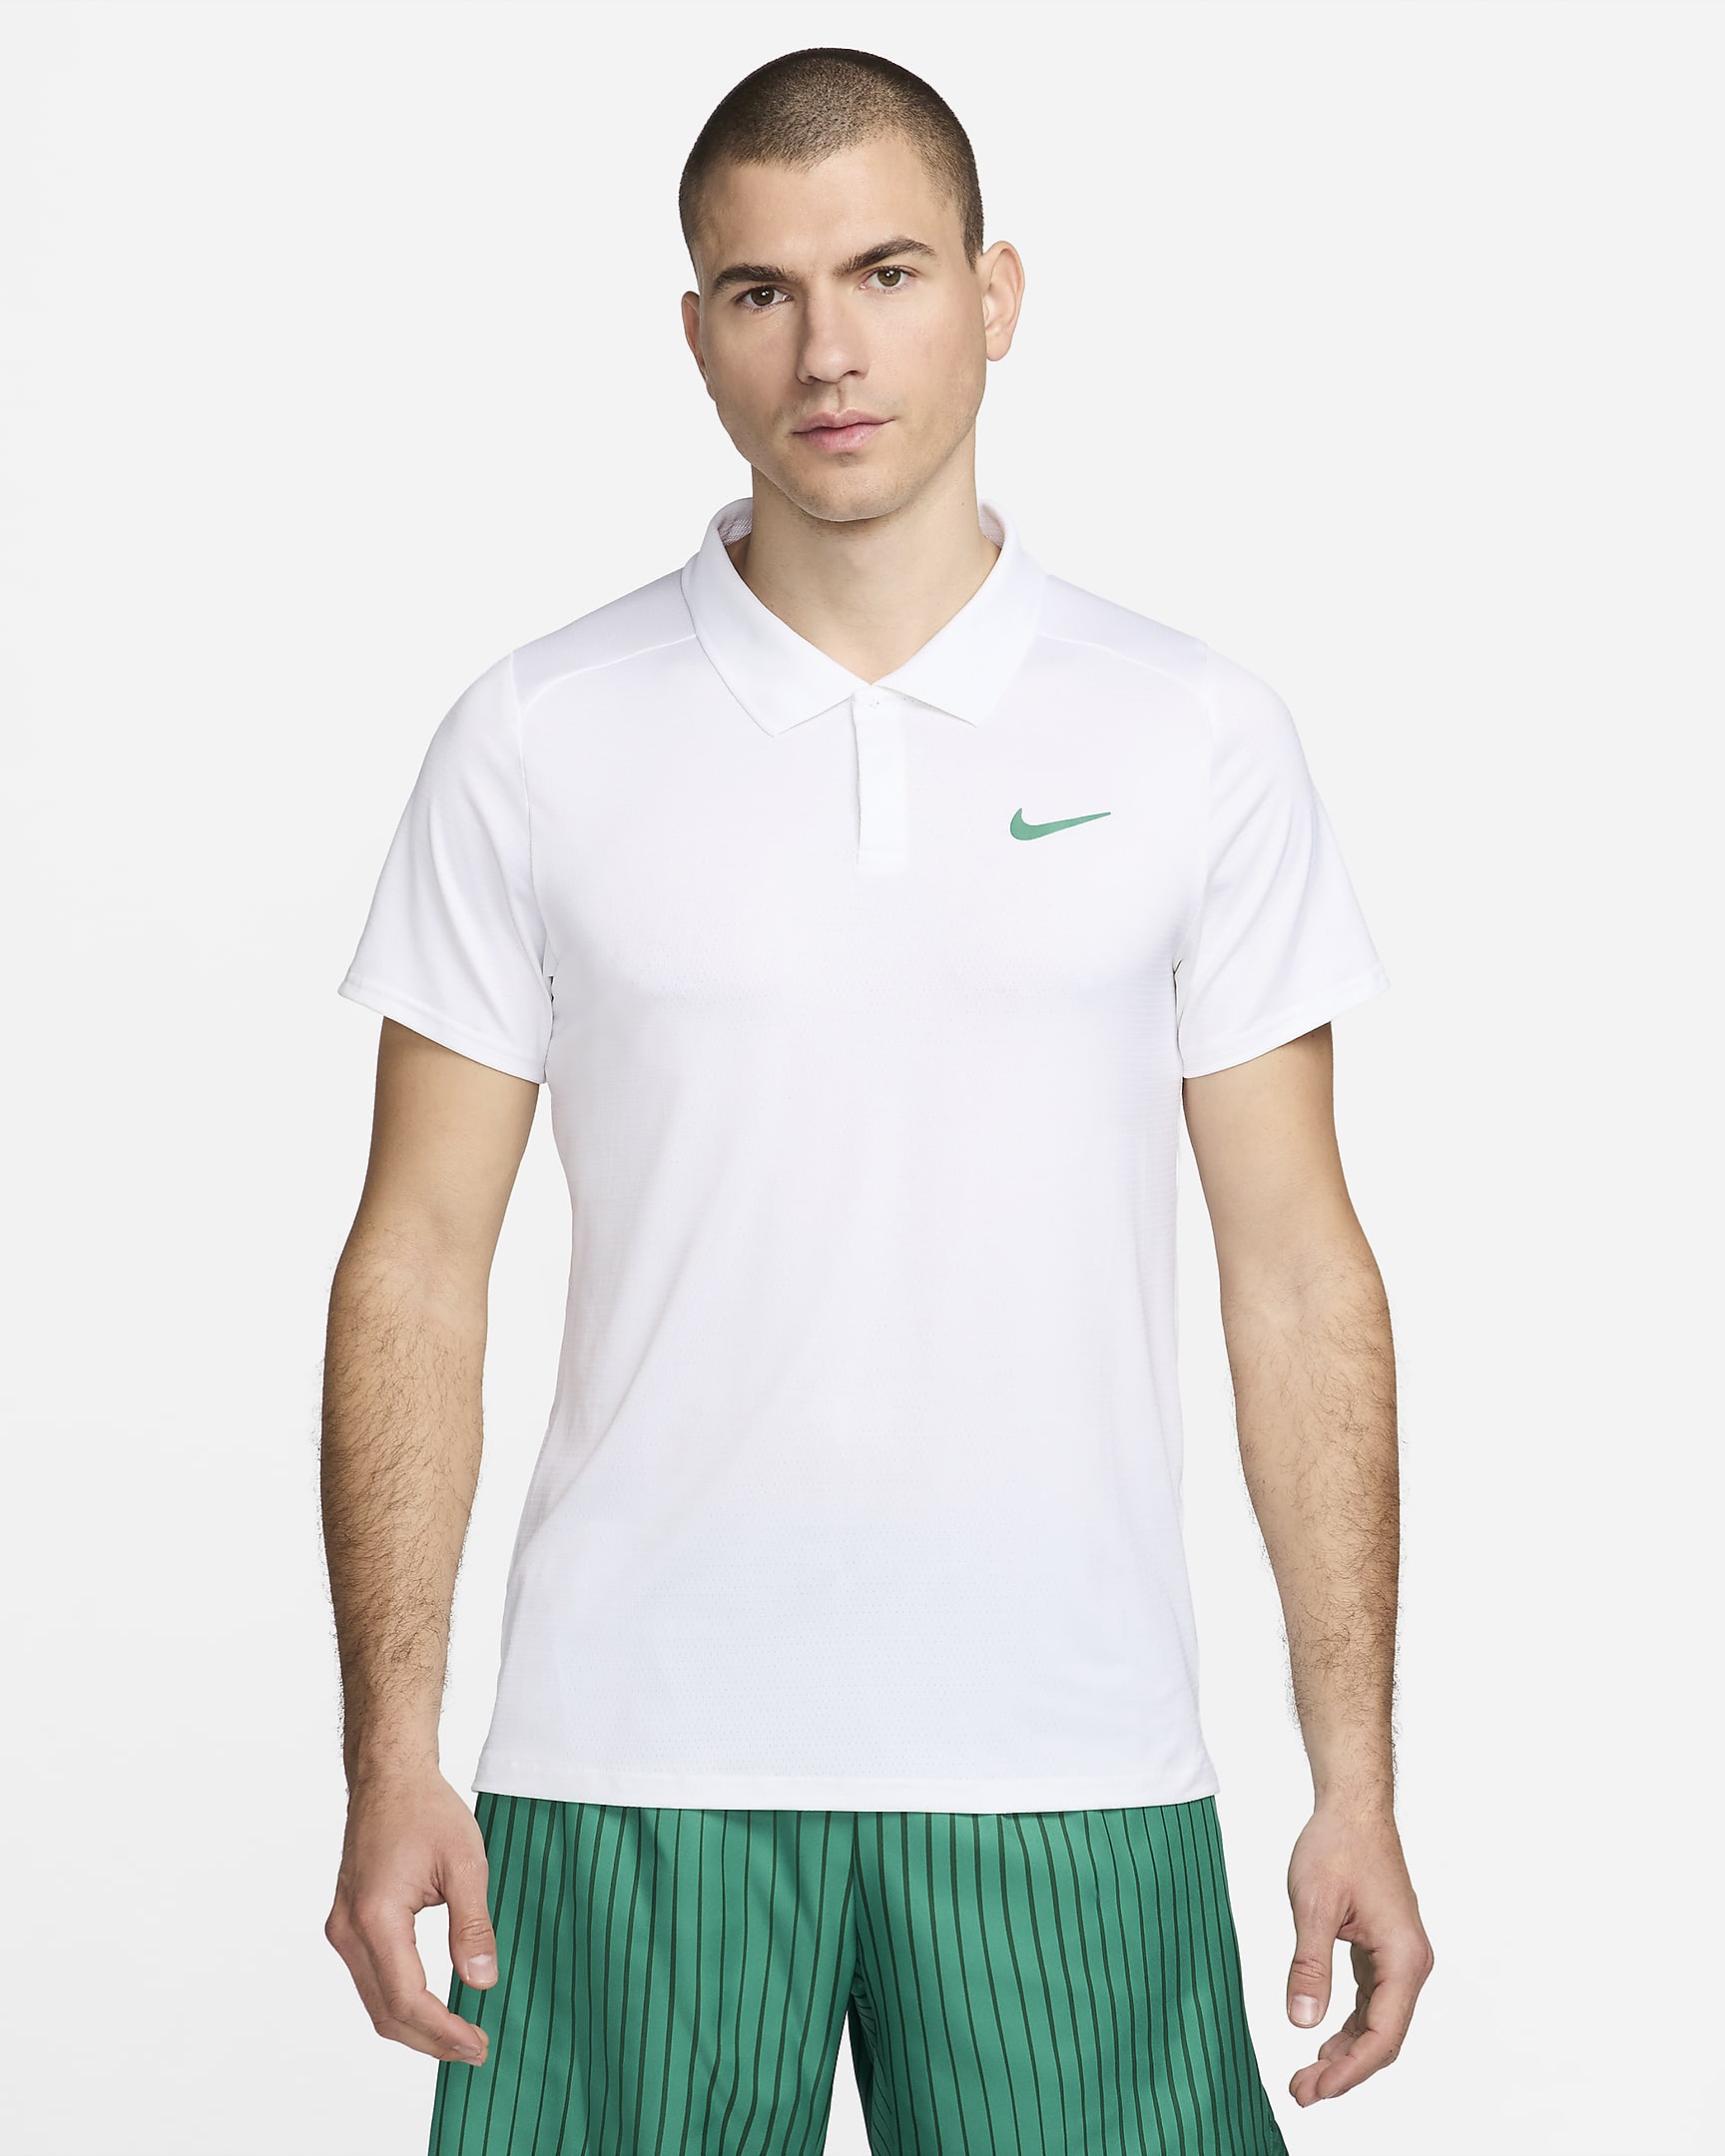 NikeCourt Advantage Men's Tennis Polo - White/Malachite